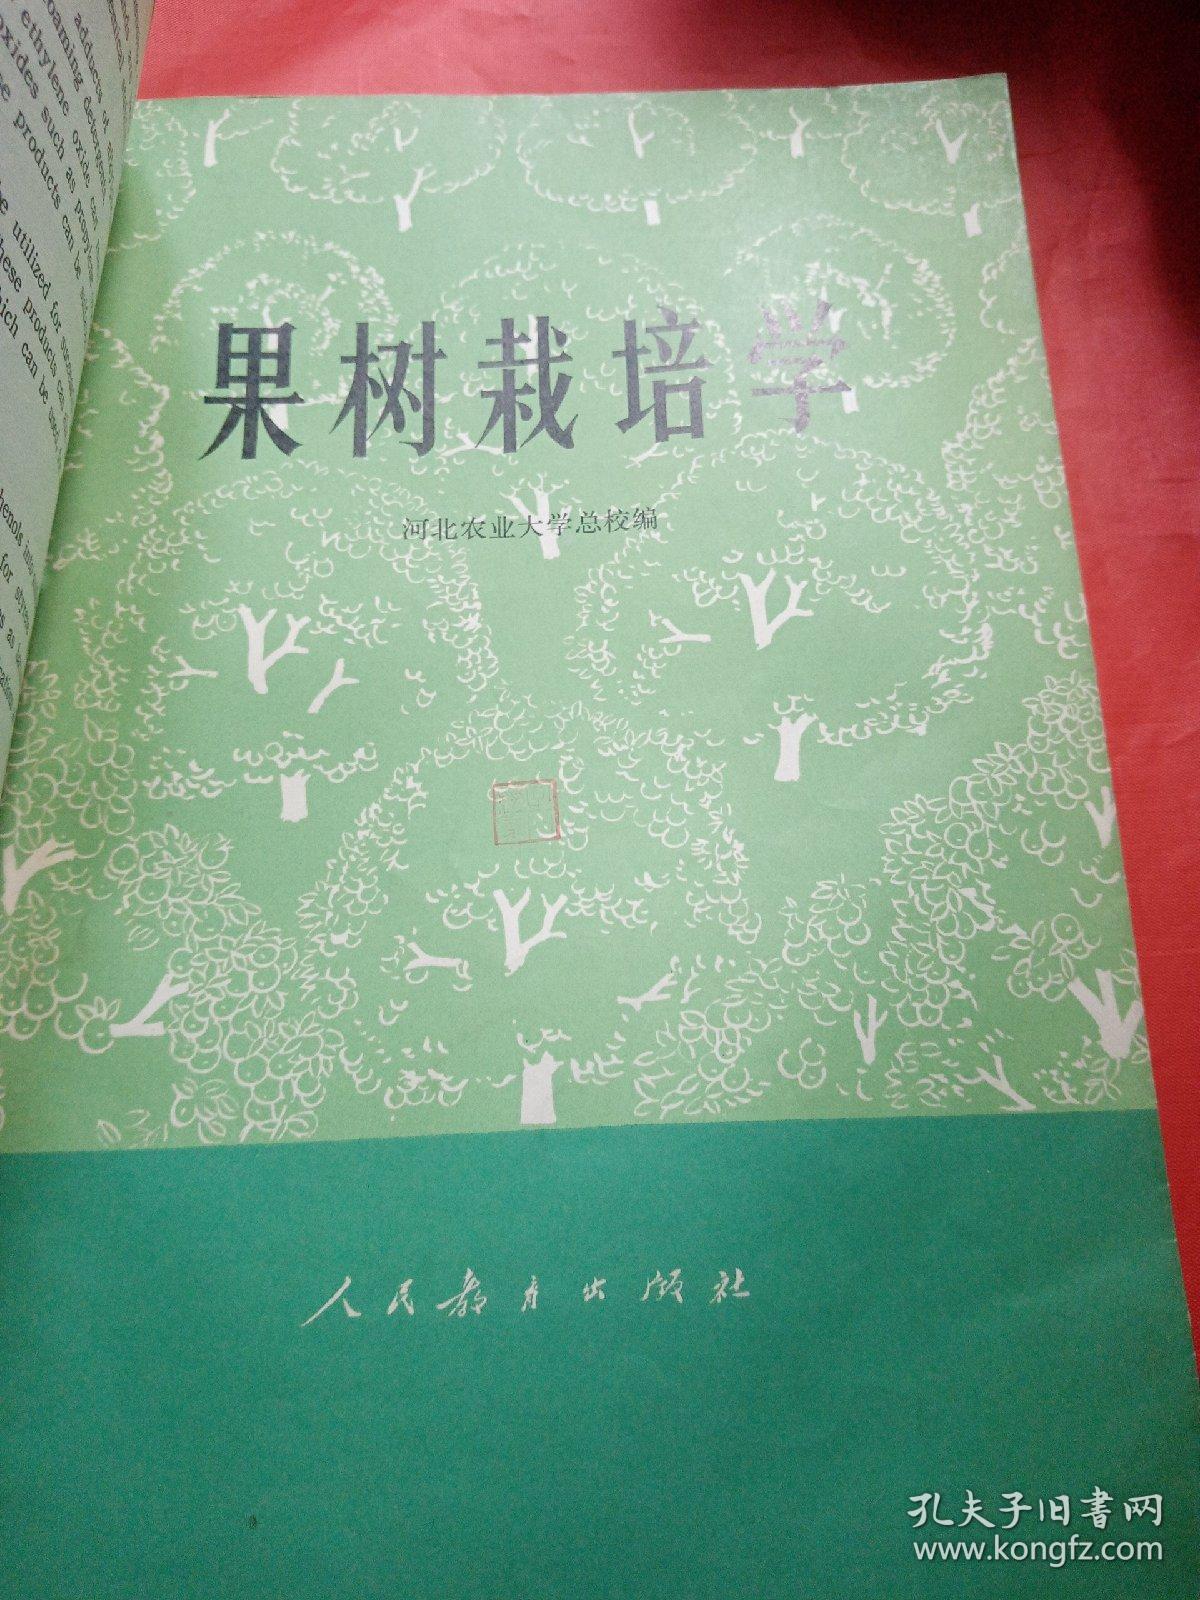 果树栽培学
1977年
一版一印
此书是新疆八一农学院  新疆农业大学
吴经柔老师的私人藏书，封面有吴经柔老师的私人印章